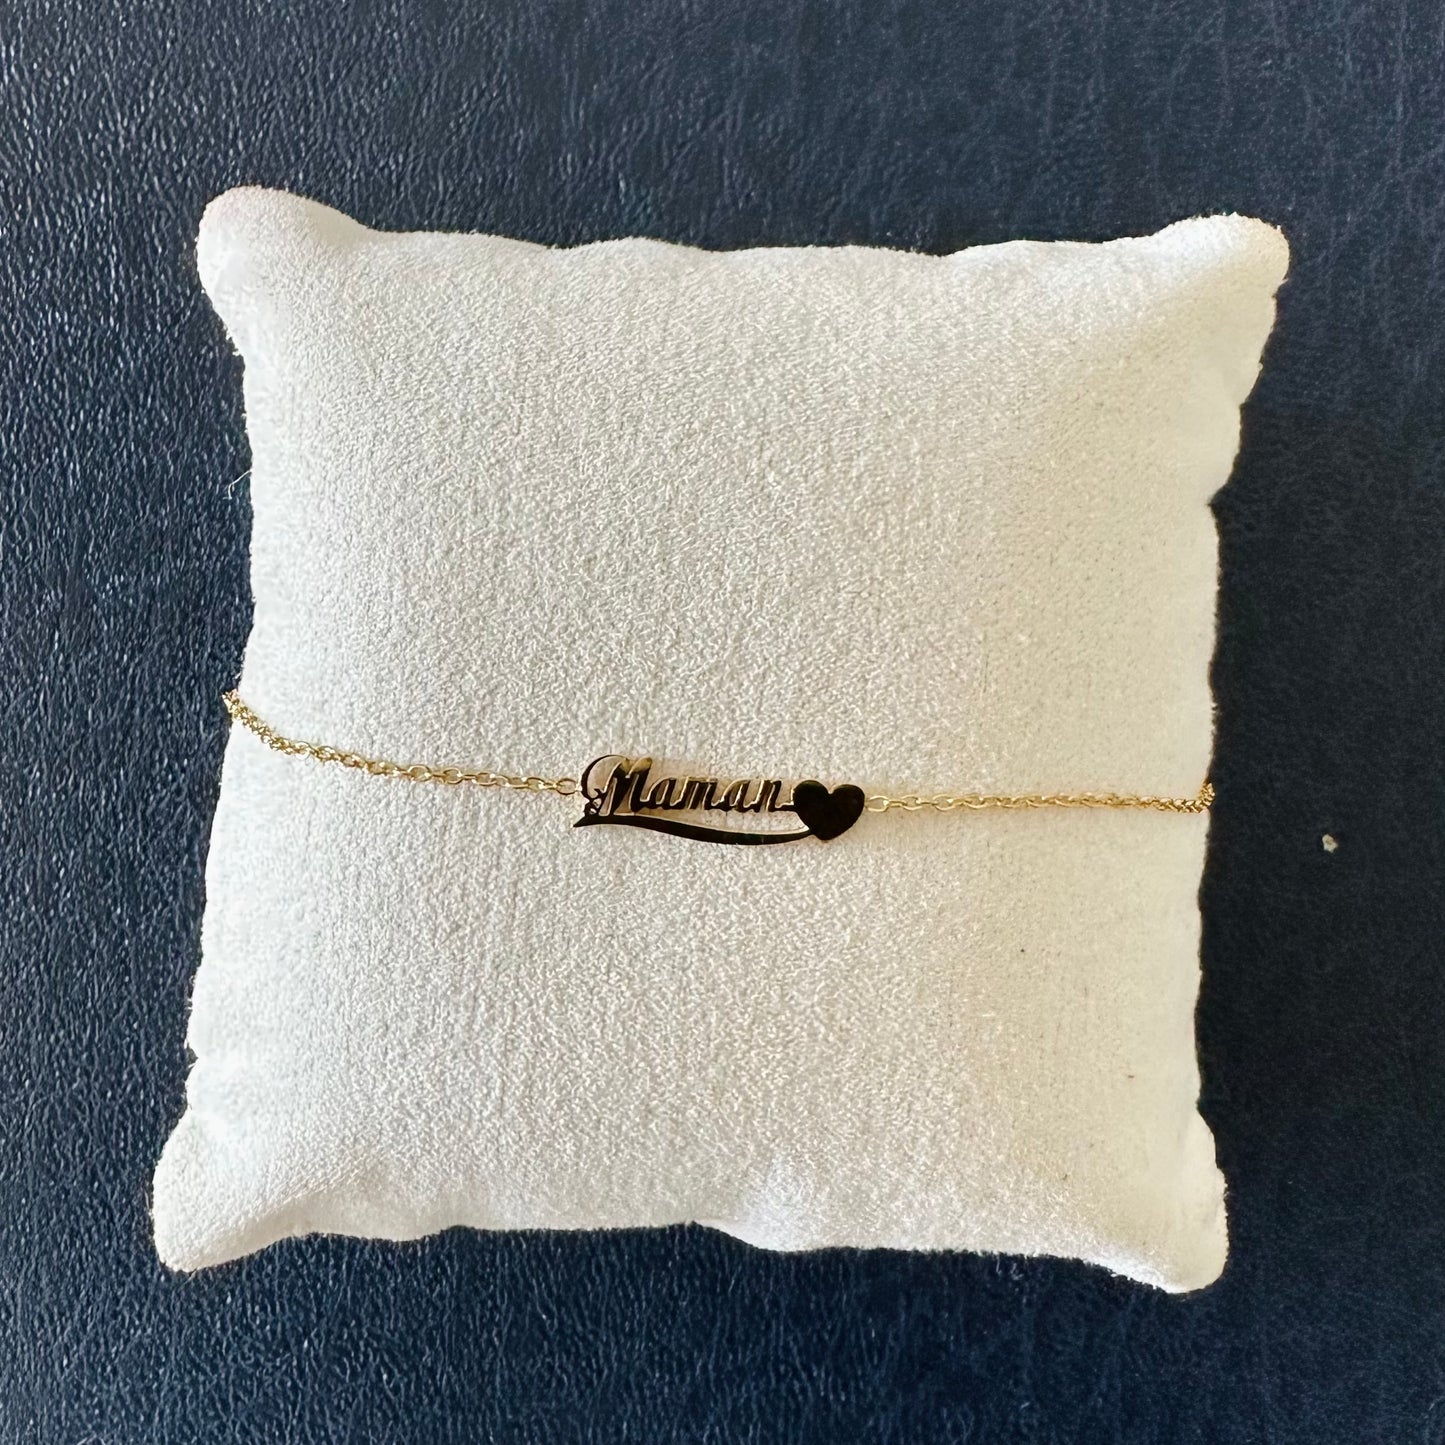 Collier ou bracelet « Maman » en acier inoxydable doré ou argenté